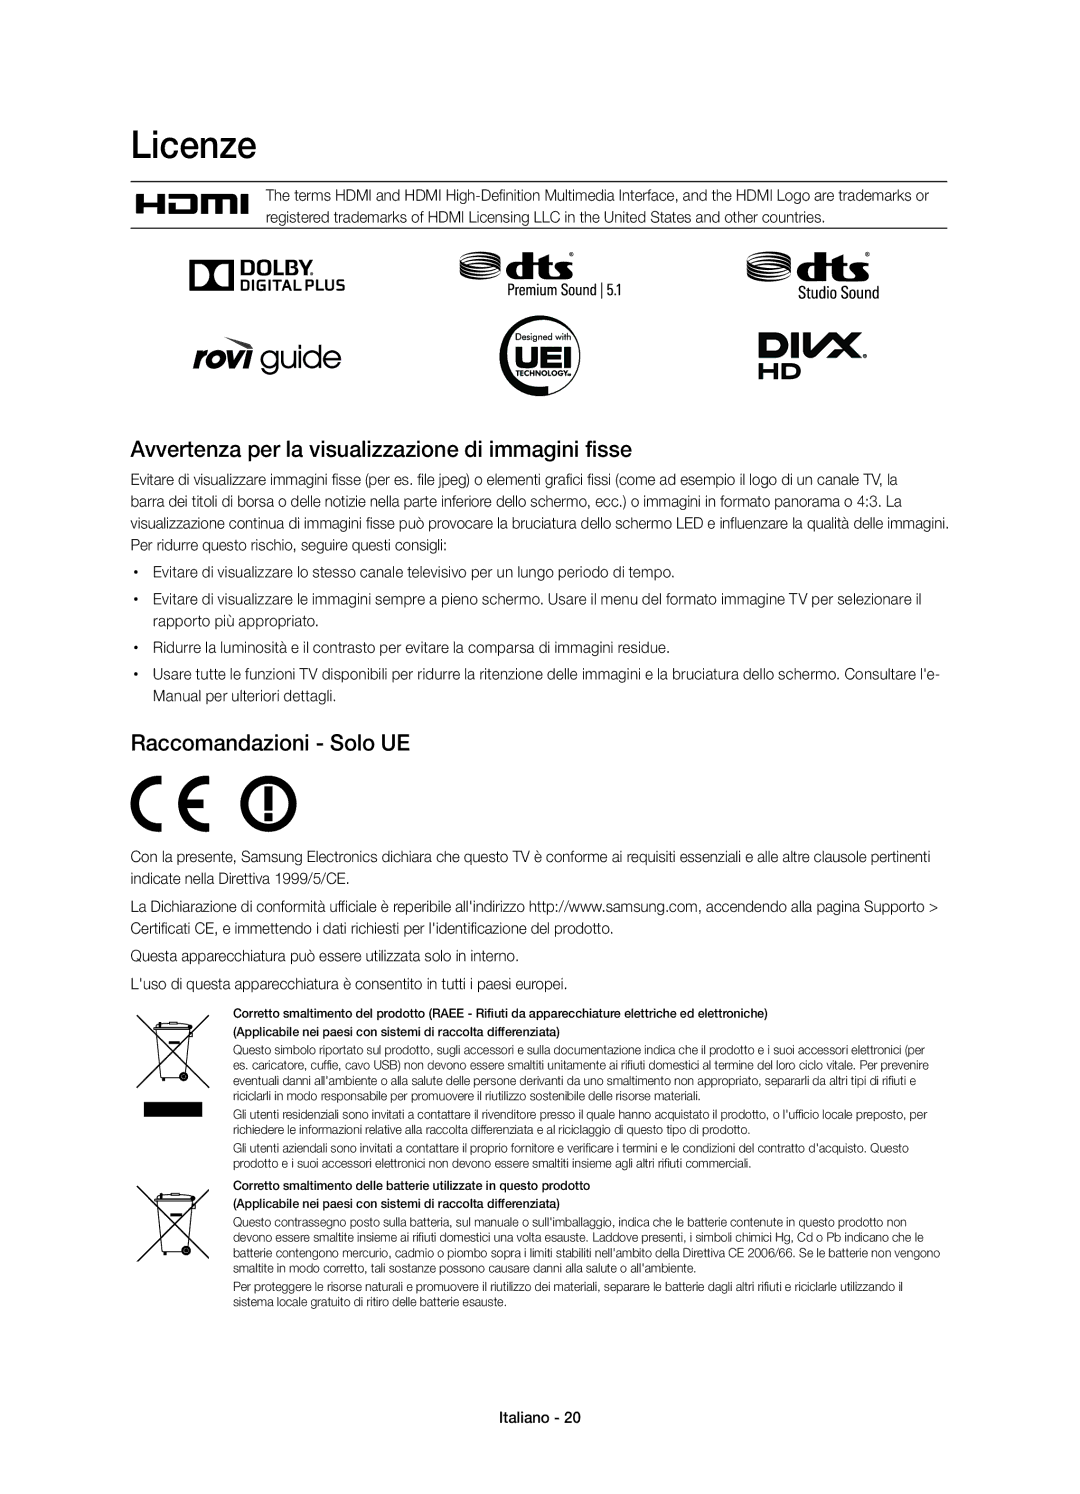 Samsung UE32H5570SSXZG manual Licenze, Avvertenza per la visualizzazione di immagini fisse, Raccomandazioni Solo UE 